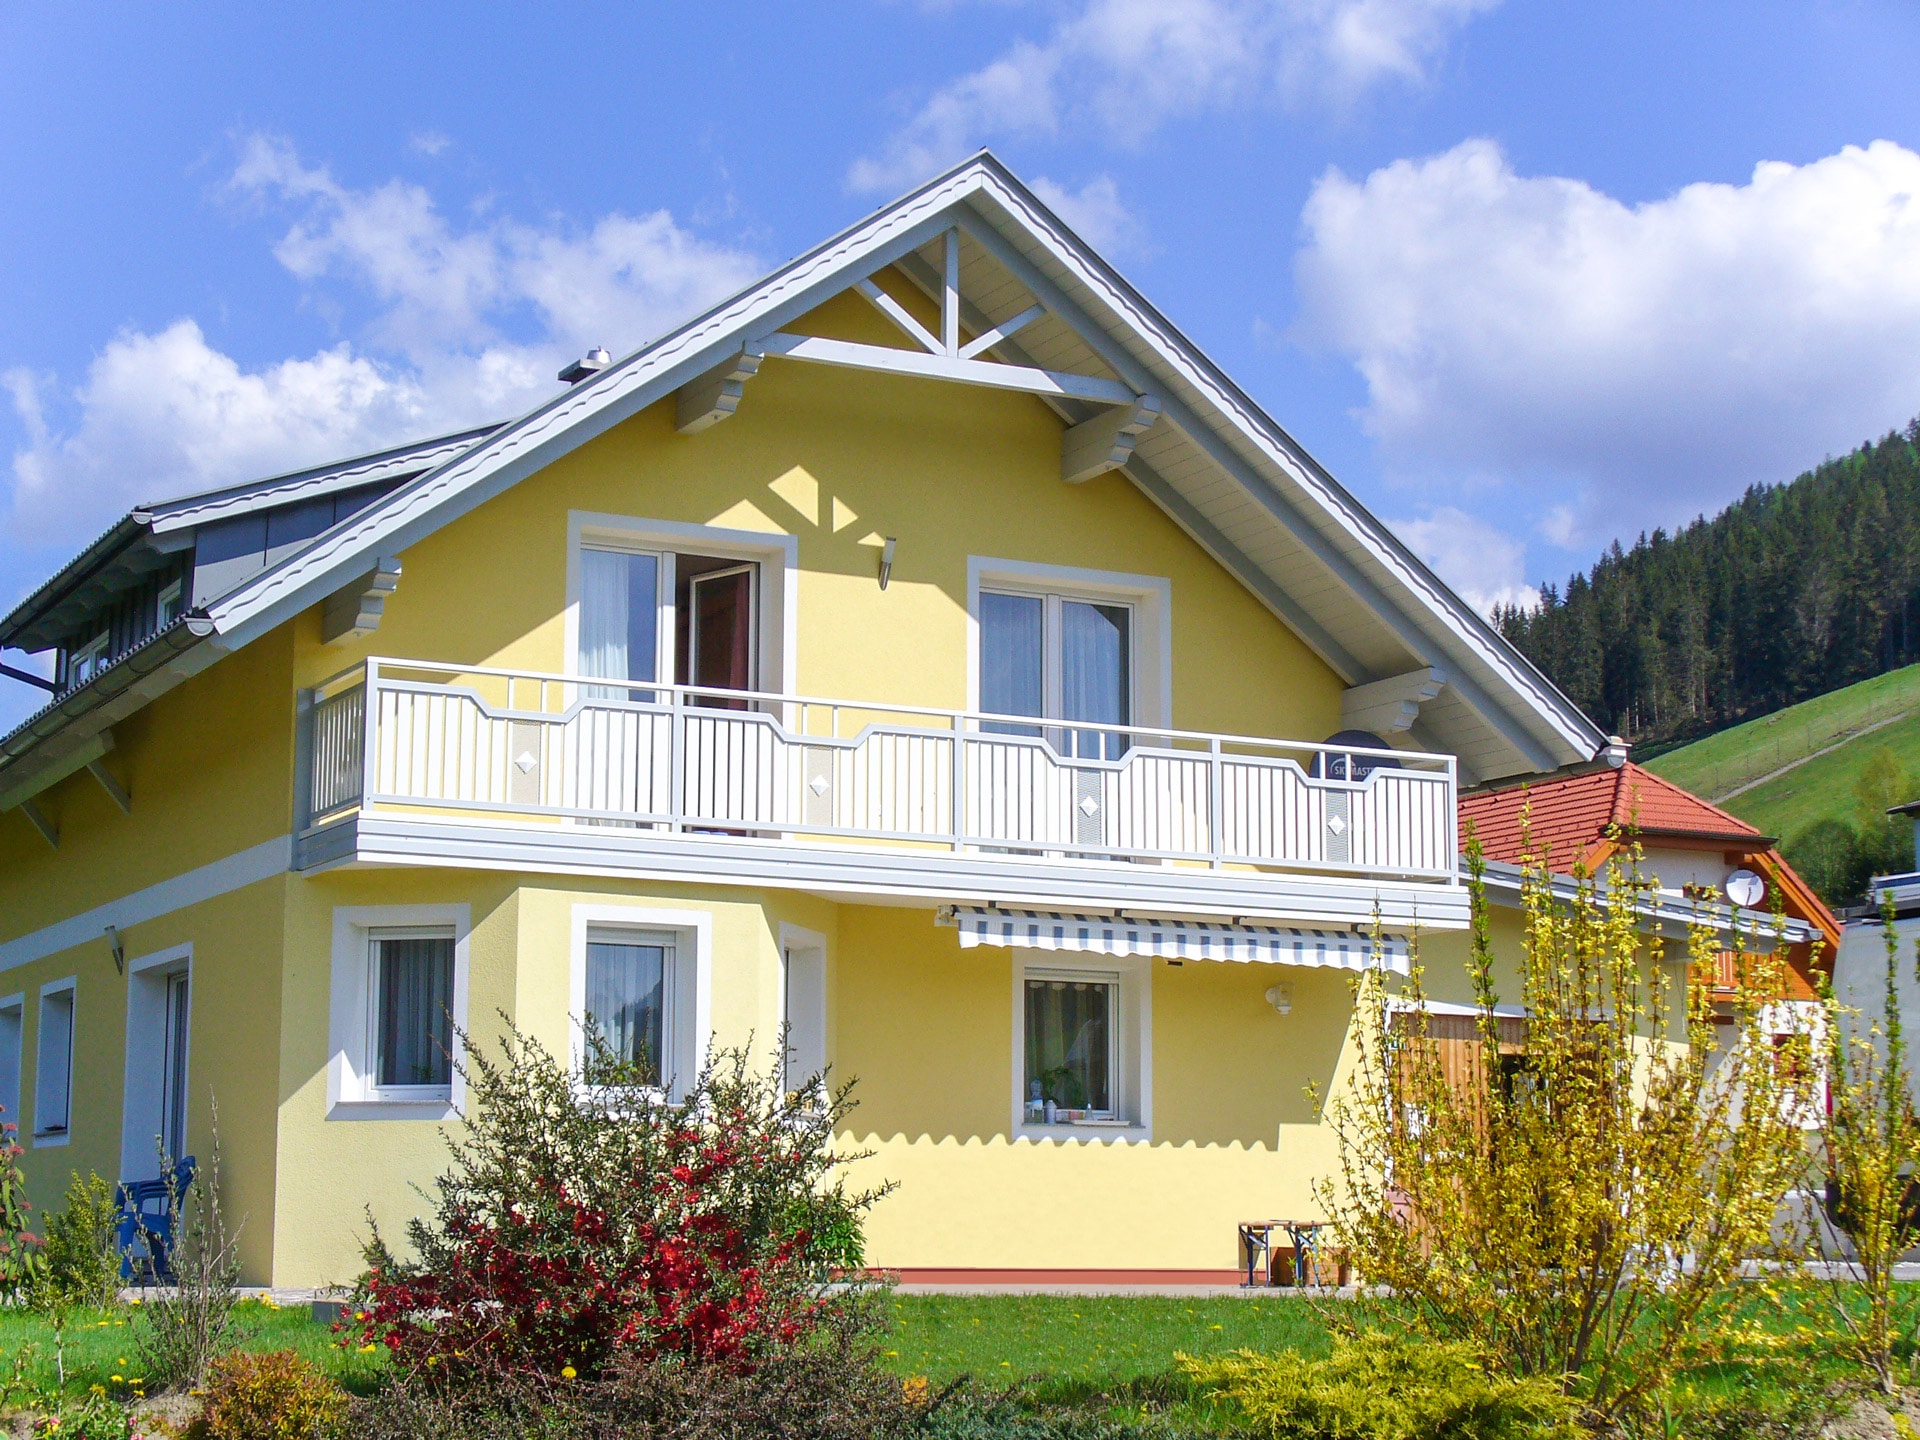 Steyr 03 b | weiß grauer Alu Latten Balkon mit Aluminium-Blende bei gelbem Einfamilienhaus | Svoboda